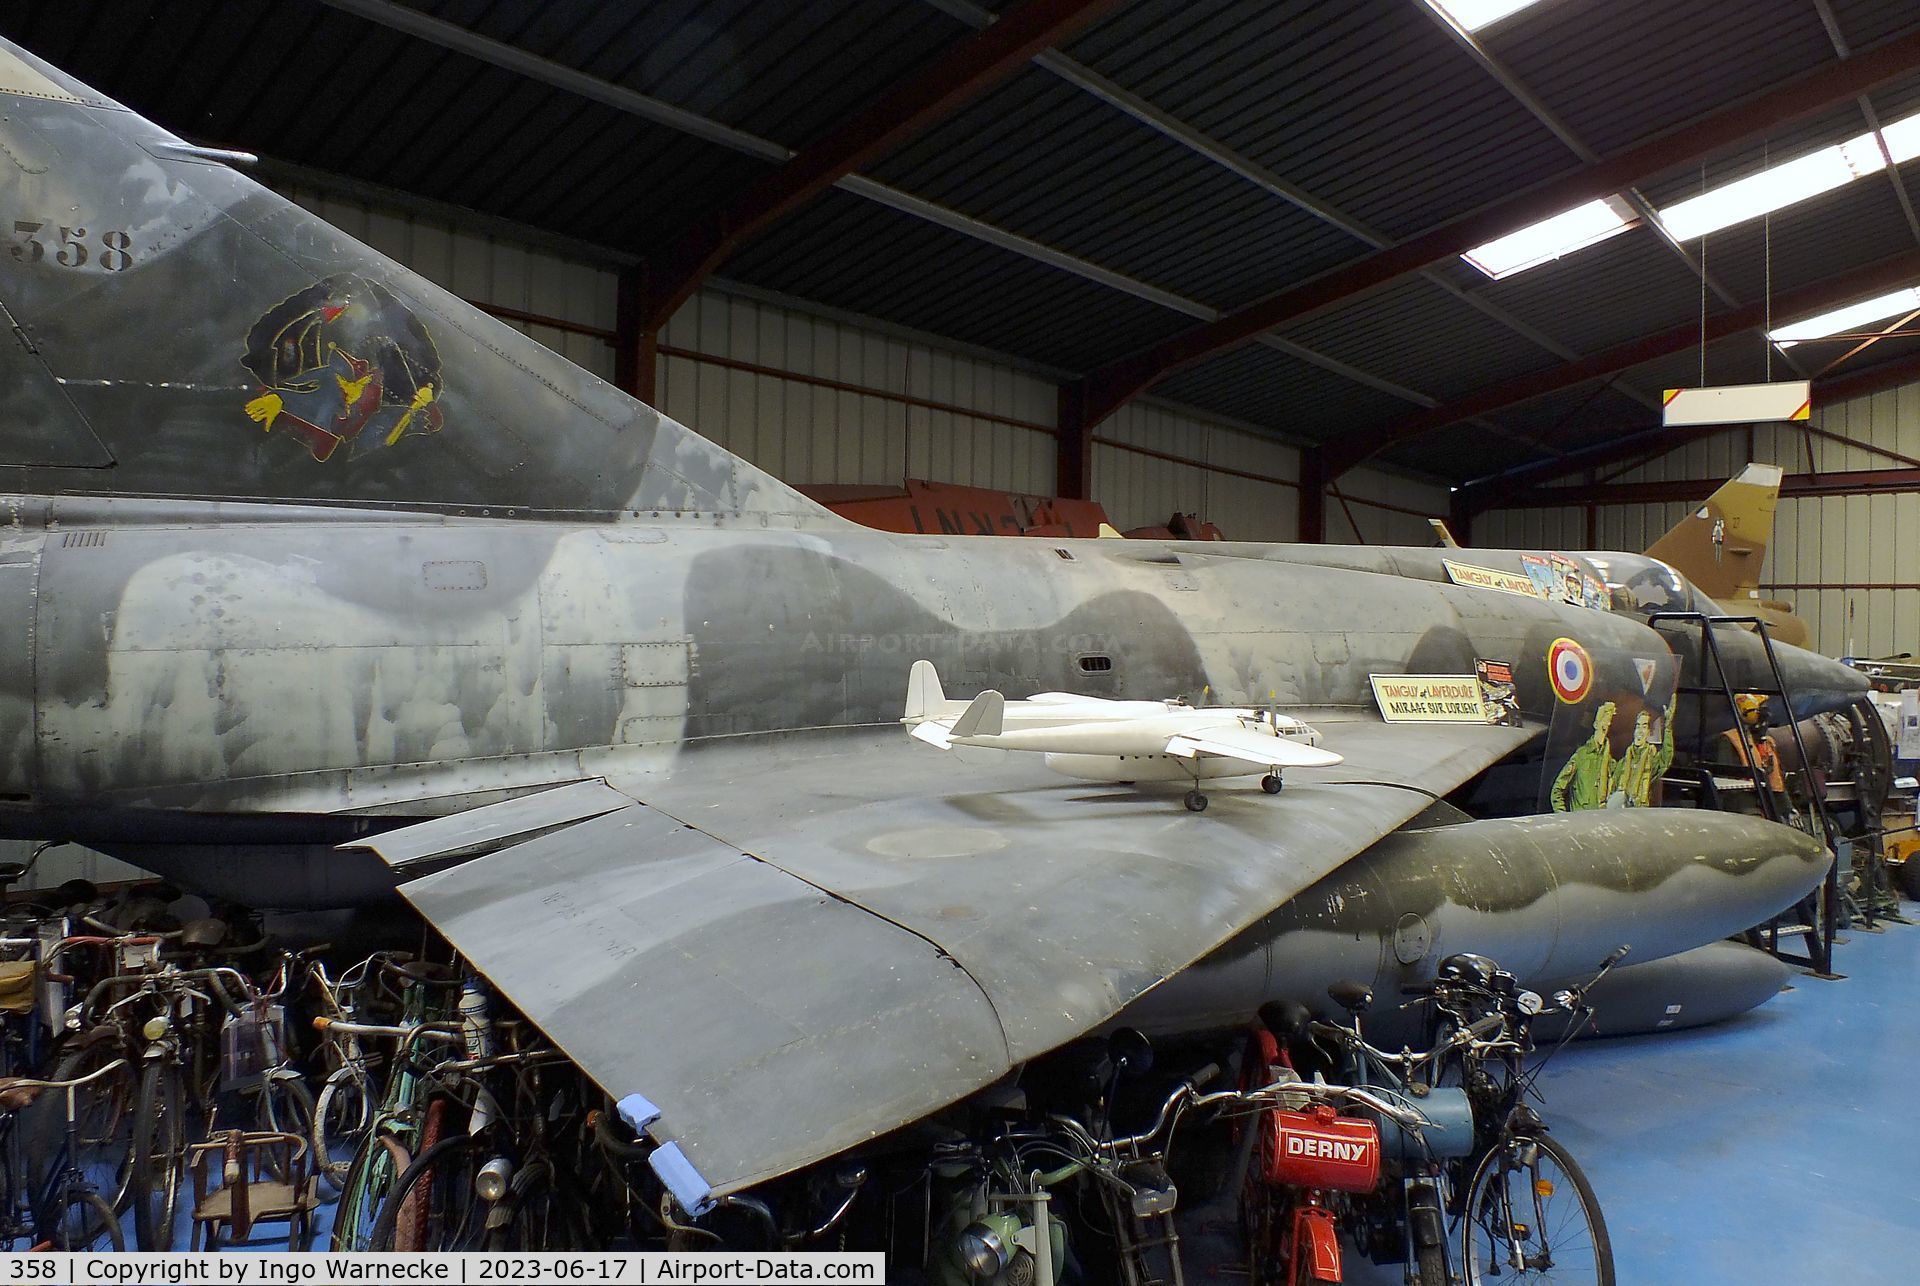 358, Dassault Mirage IIIRD C/N 358, Dassault Mirage III RD at the Musee de l'Epopee de l'Industrie et de l'Aeronautique, Albert